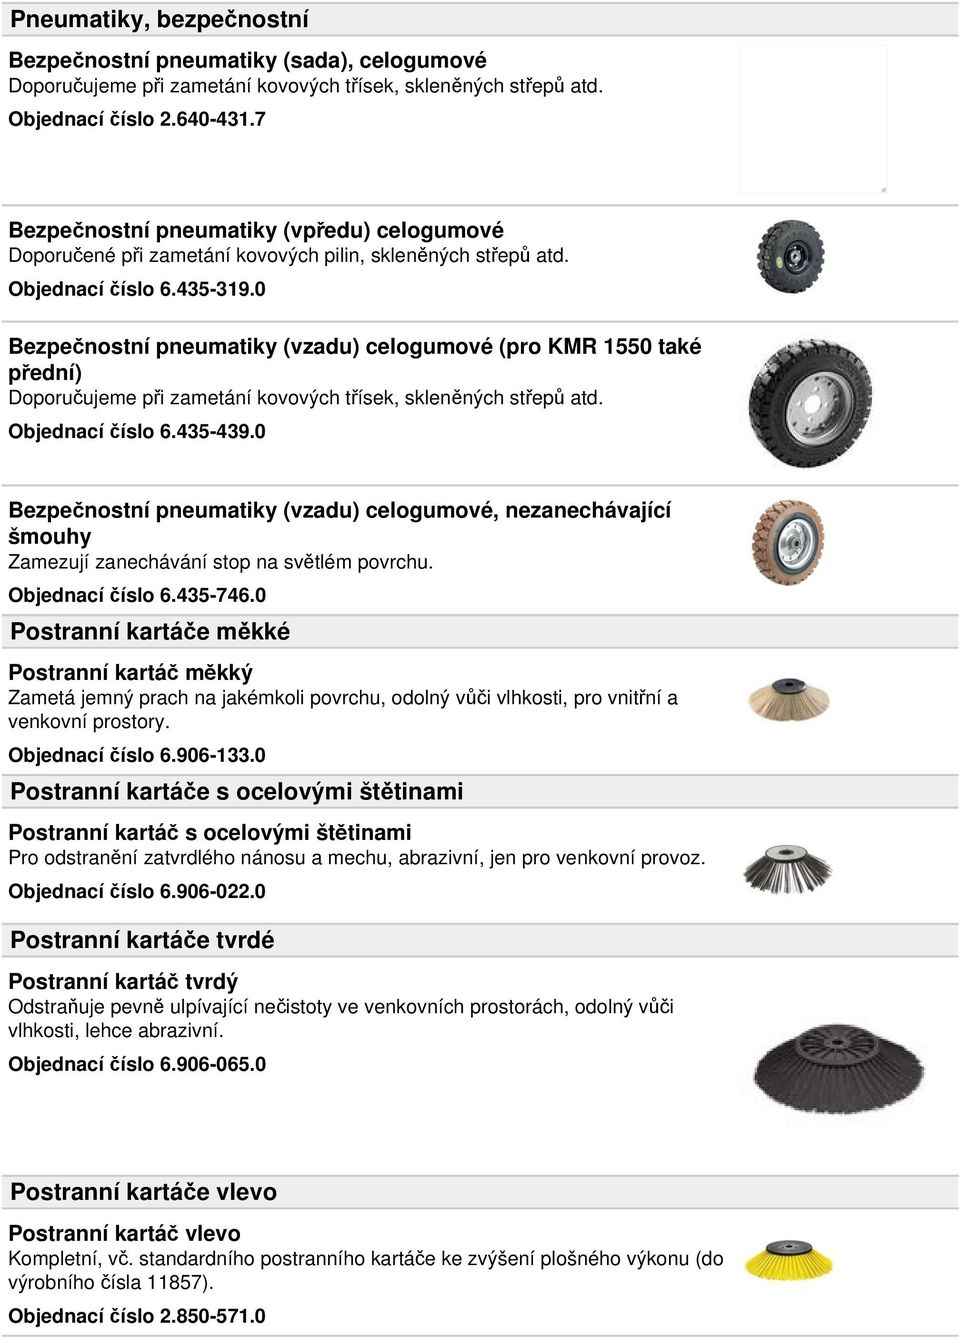 0 Bezpečnostní pneumatiky (vzadu) celogumové (pro KMR 1550 také přední) Doporučujeme při zametání kovových třísek, skleněných střepů atd. Objednací číslo 6.435-439.